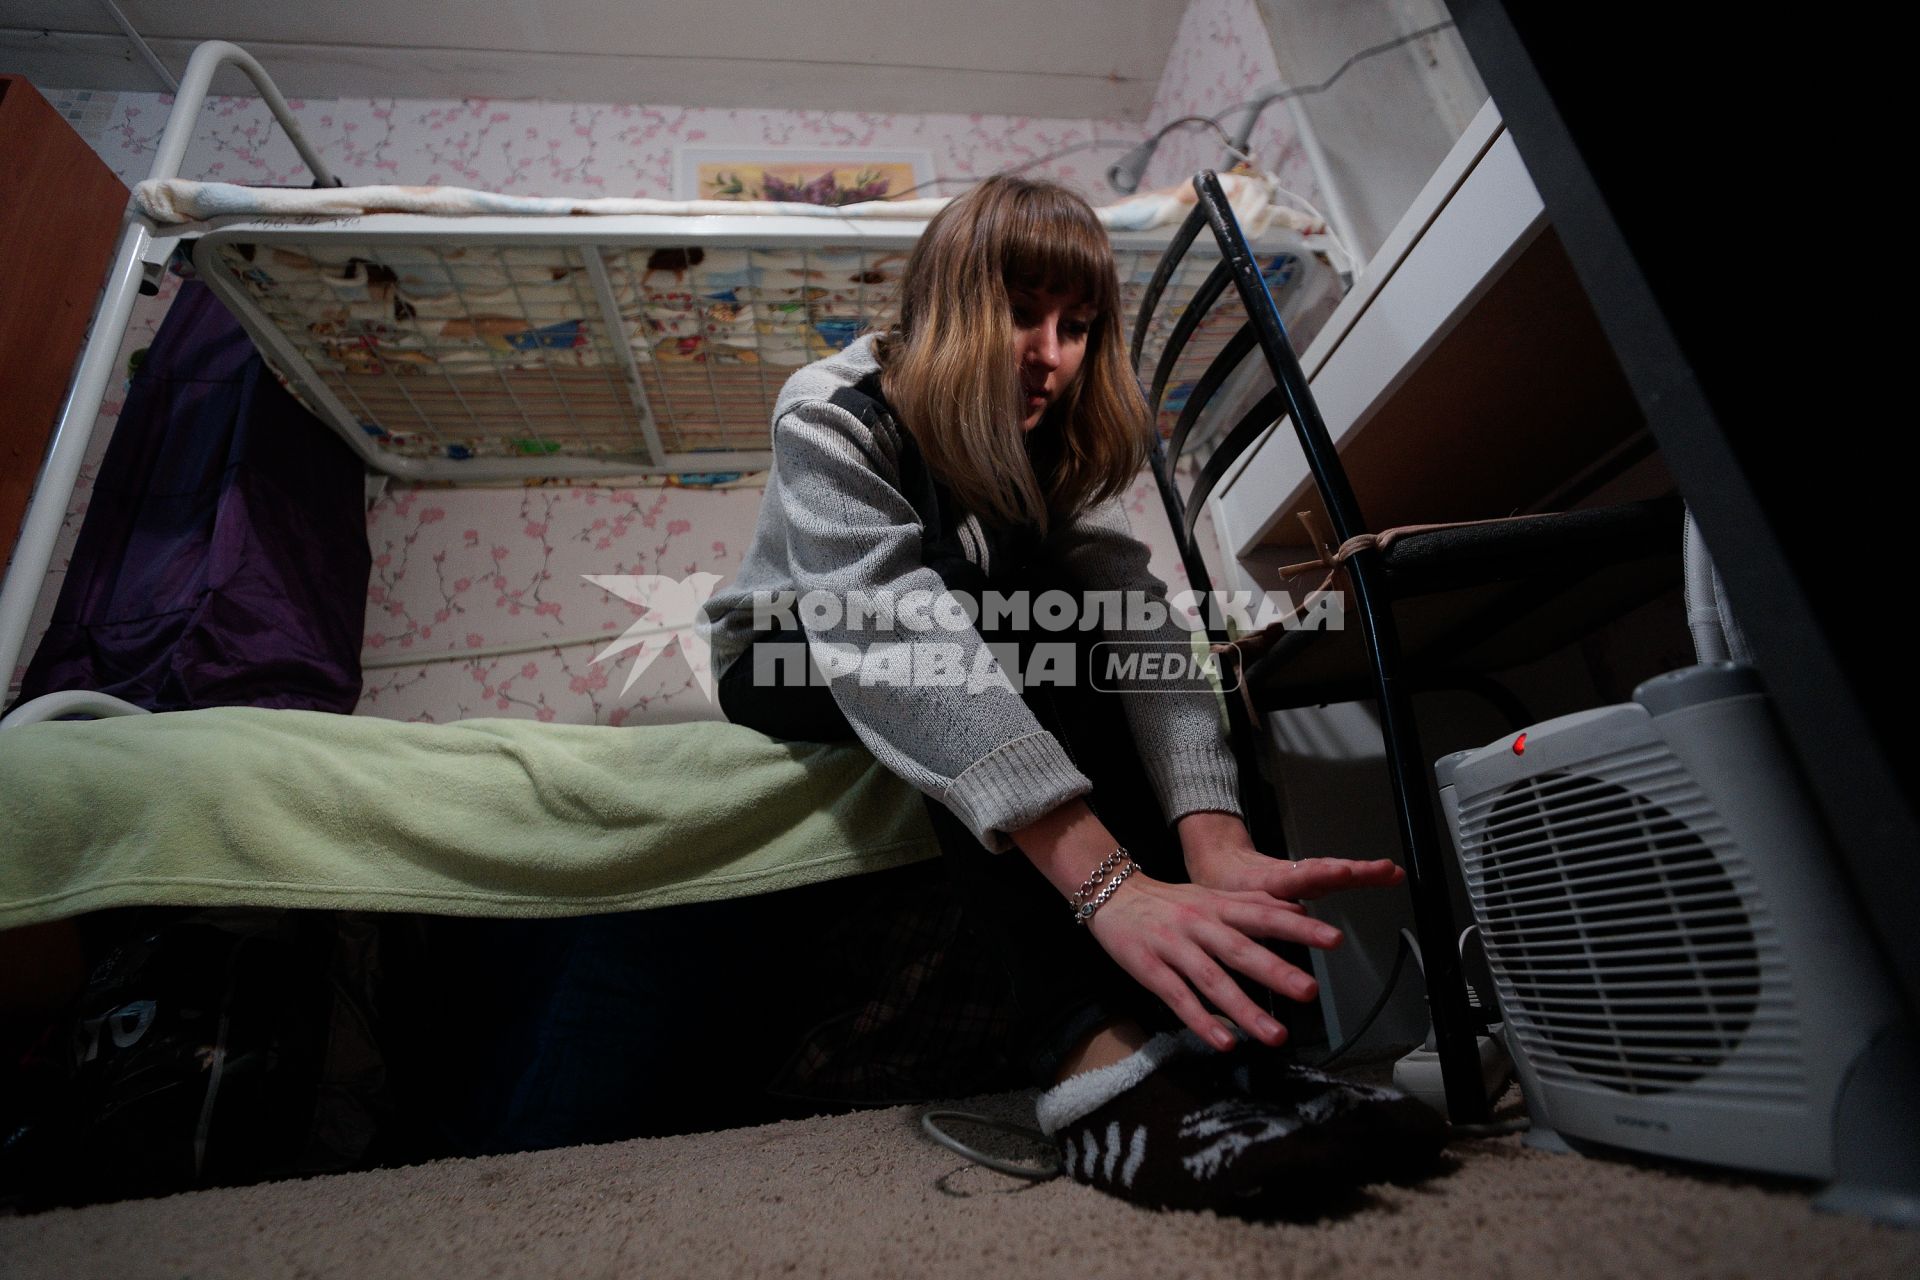 Студенческое общежитие в Екатеринбурге. На снимке: девушка греет руки у обогревателя.